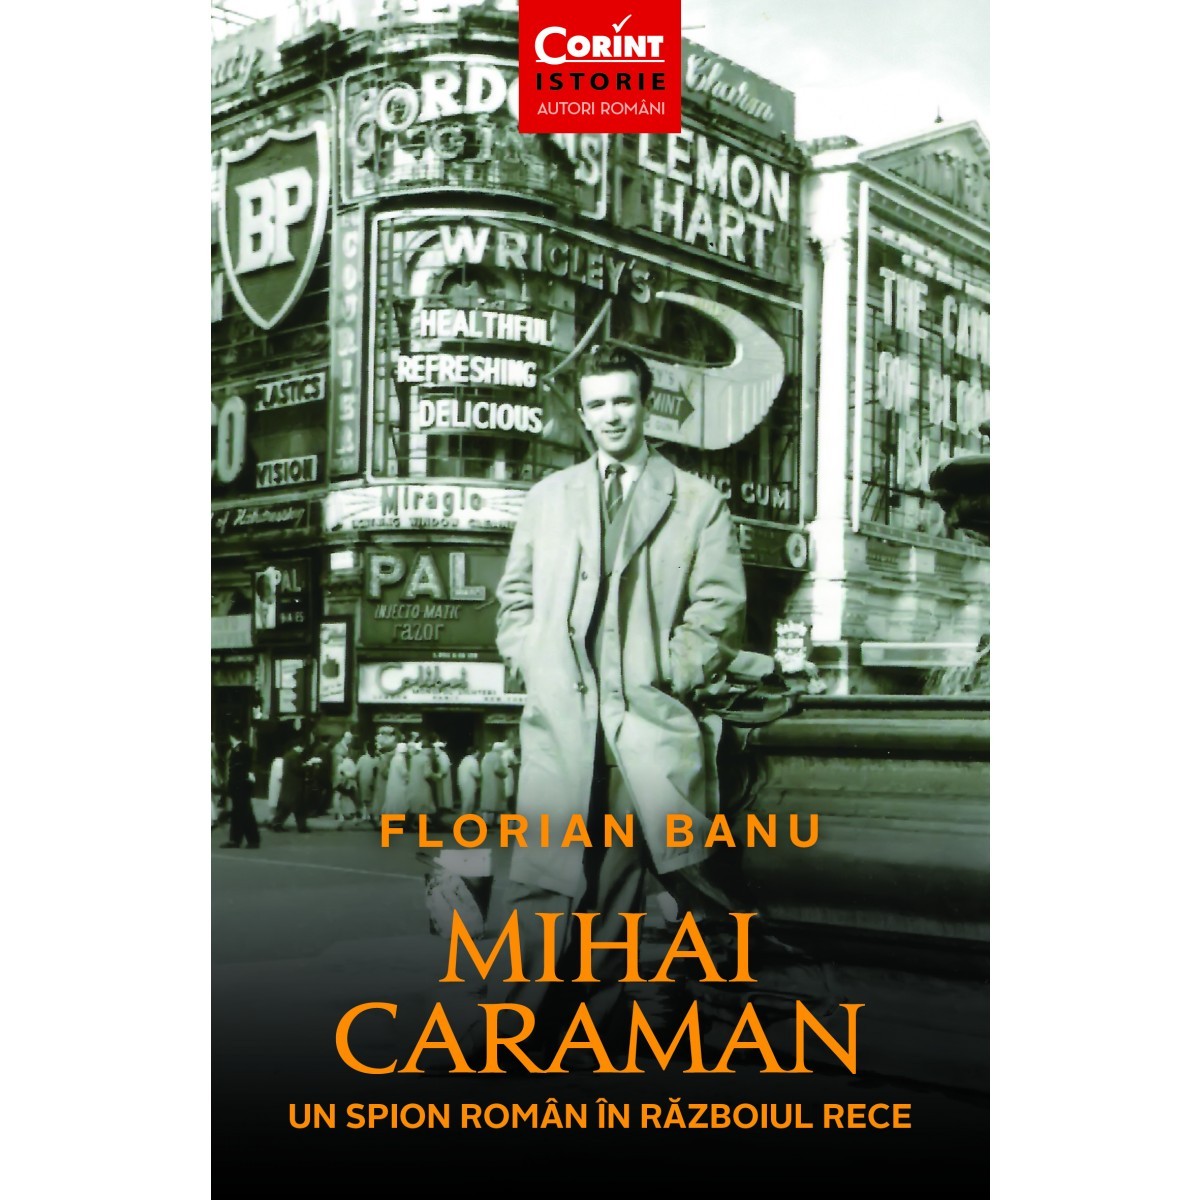 Mihai Caraman